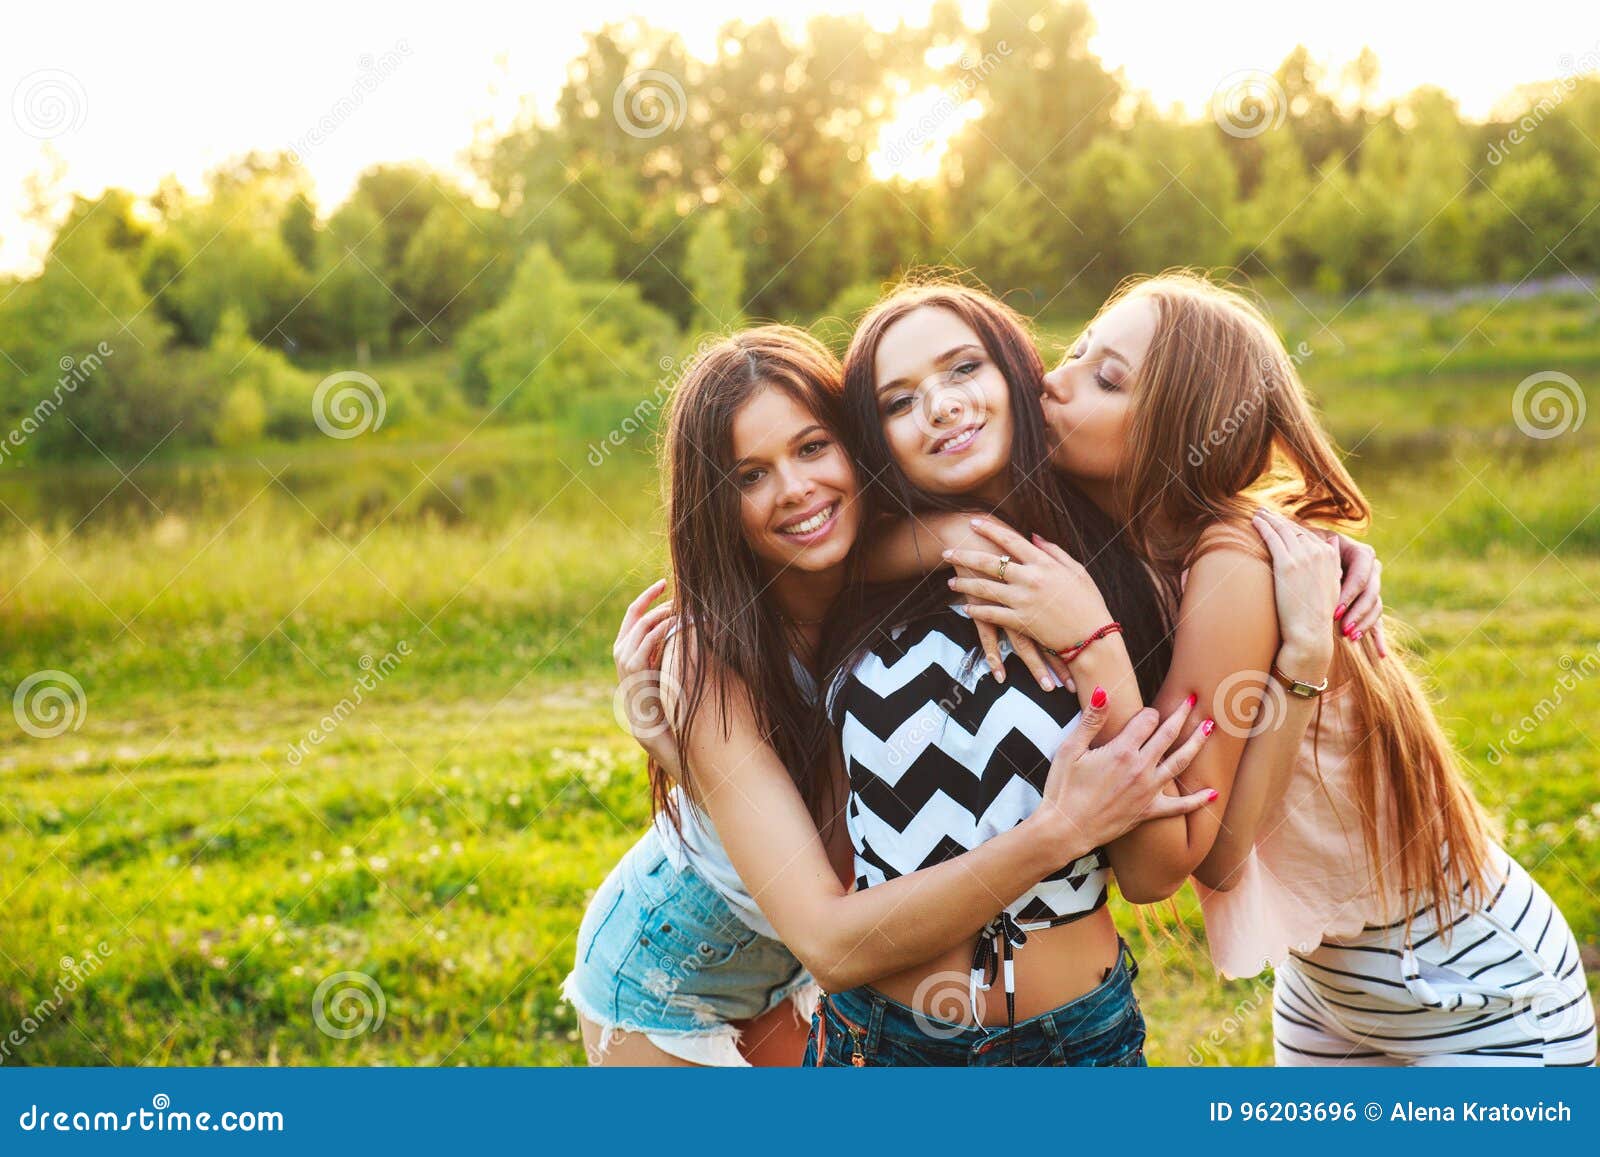 Пришли подружки сестры. Портрет двух девушек. Групповой портрет двух девочек 12 лет. Друзья обнимаются на улице 2 девушки. Портрет в парке.